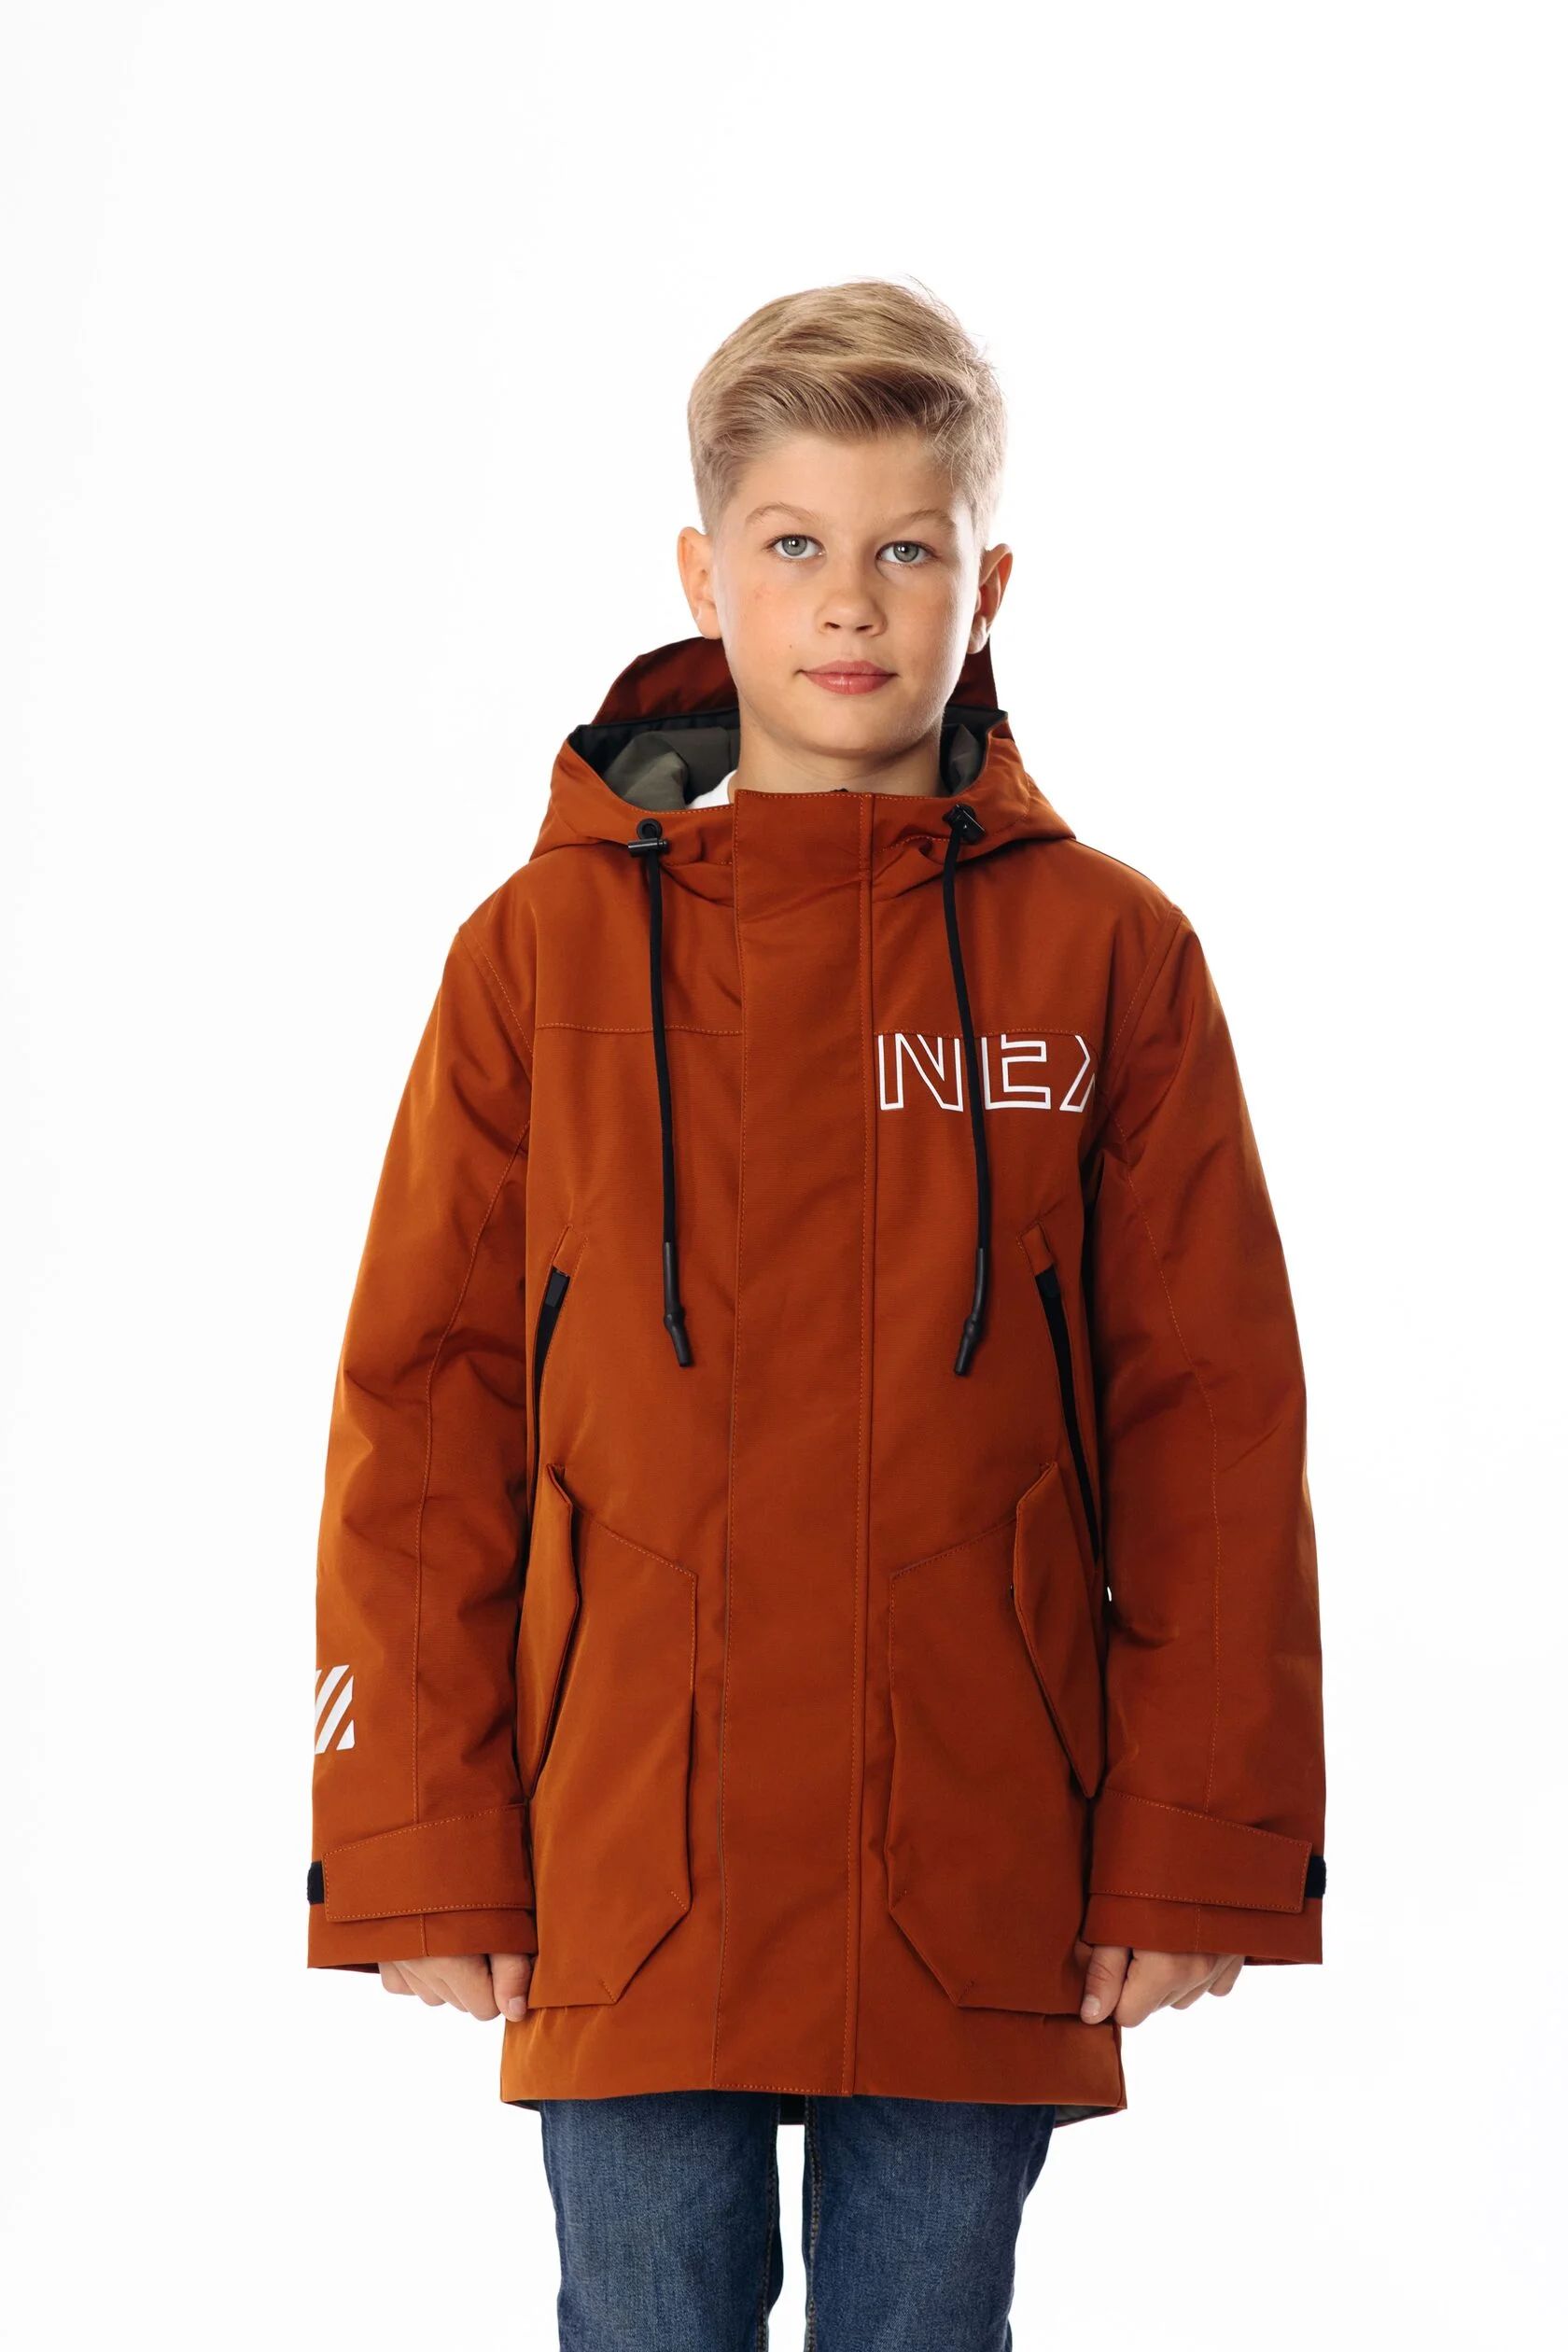 Куртка детская Yoot 2501 оранжевый, 122